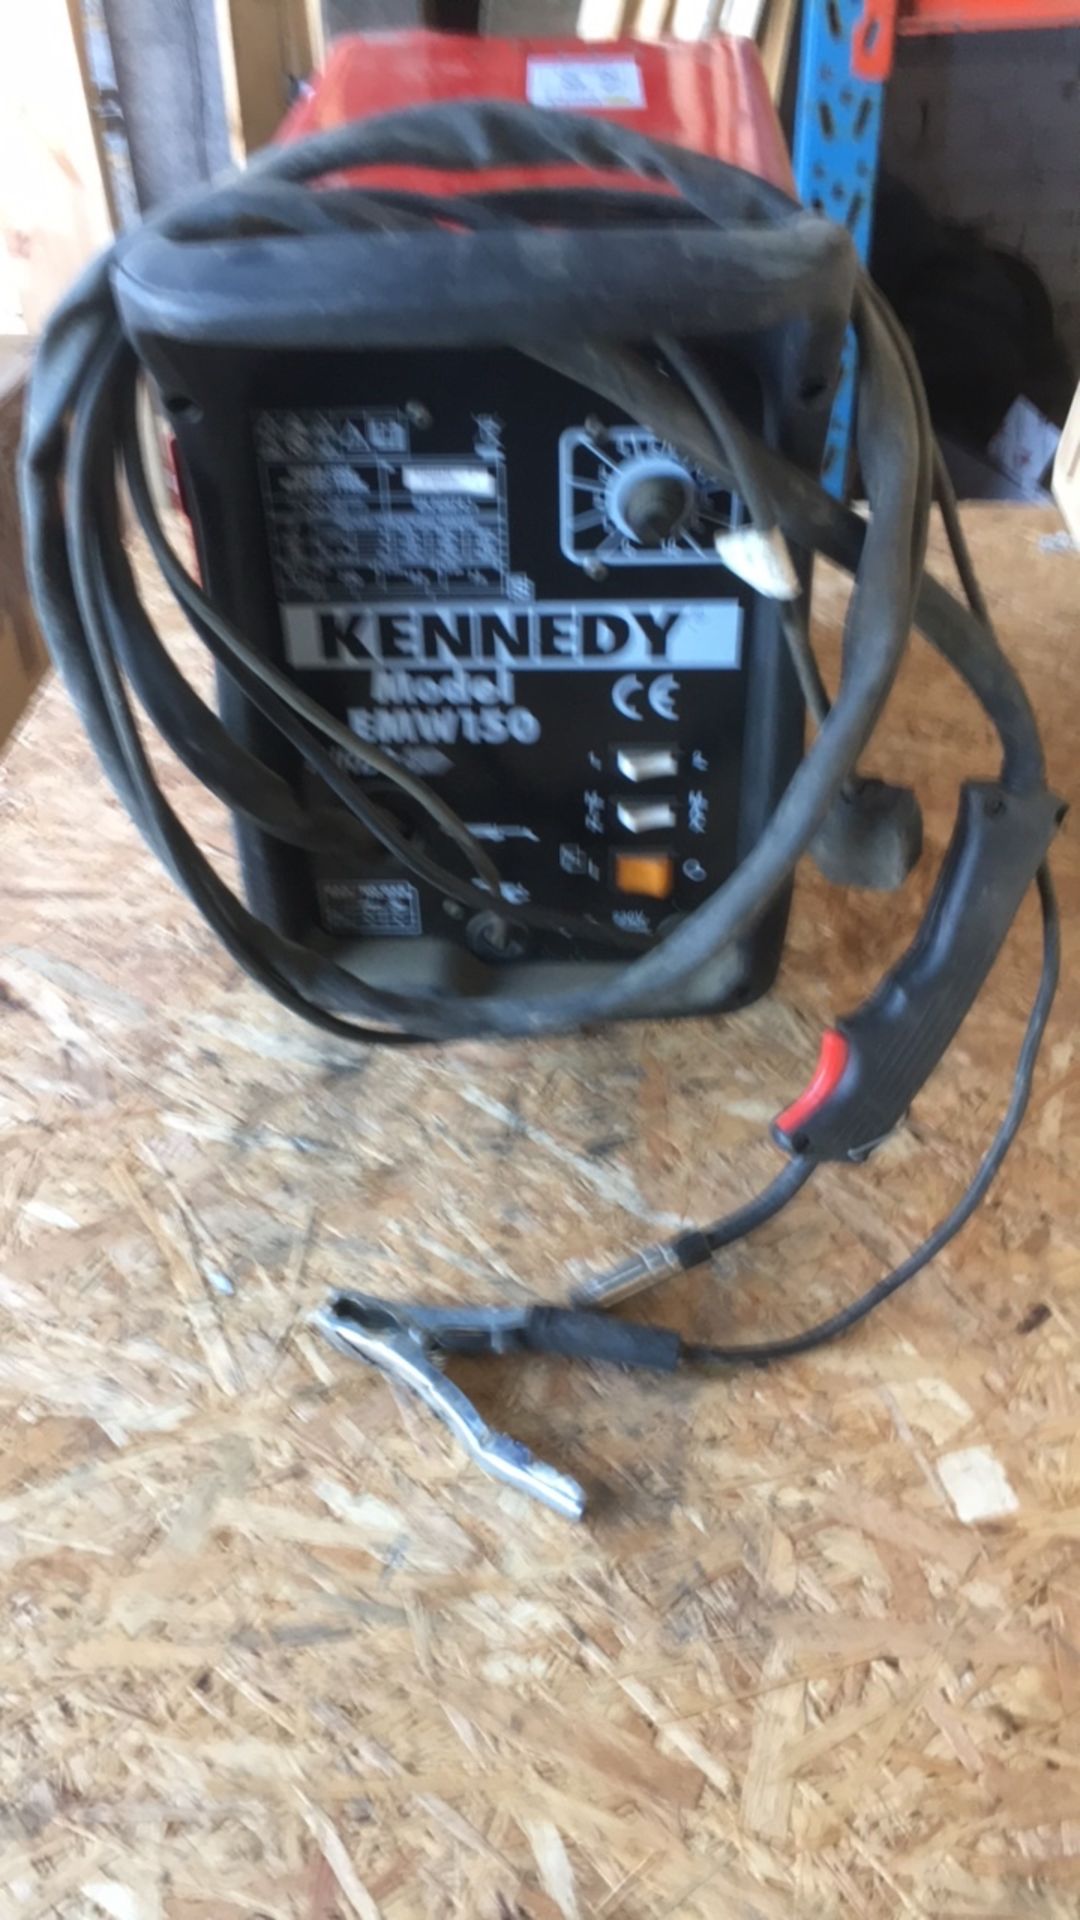 Kennedy mig welder (N653342) - Image 2 of 3